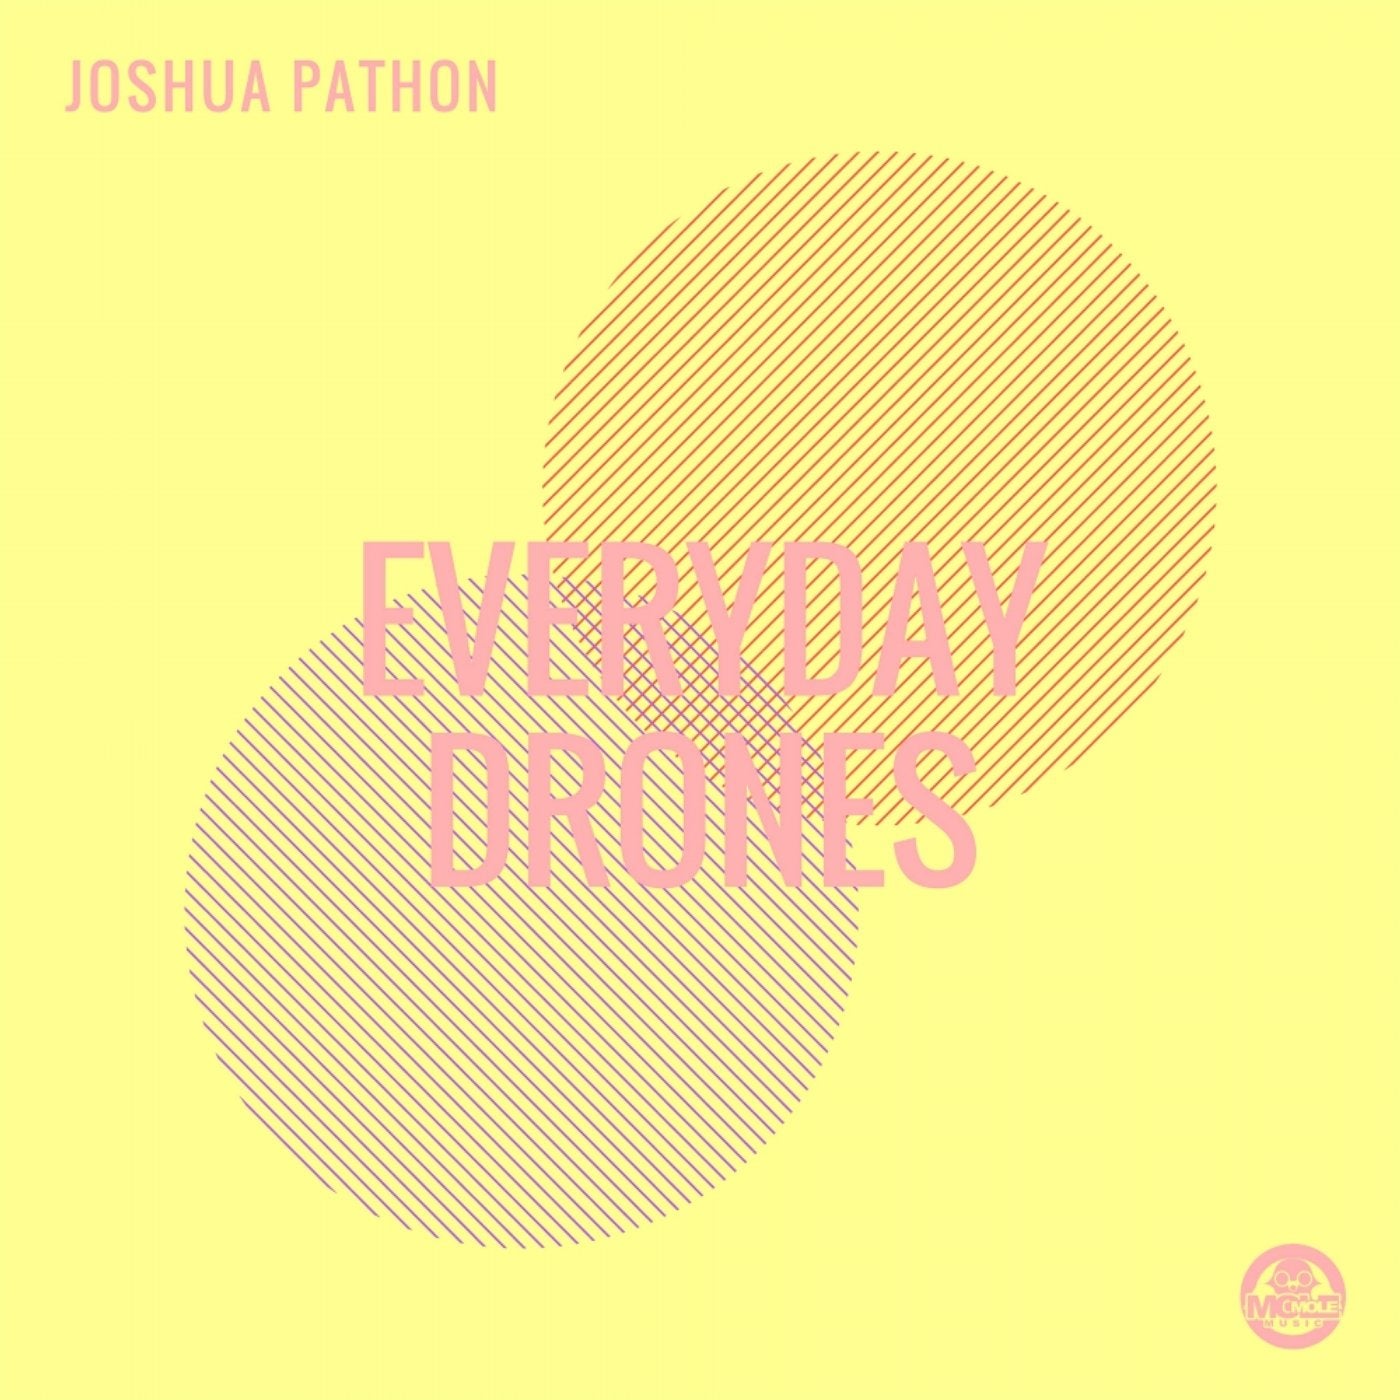 Everyday Drones